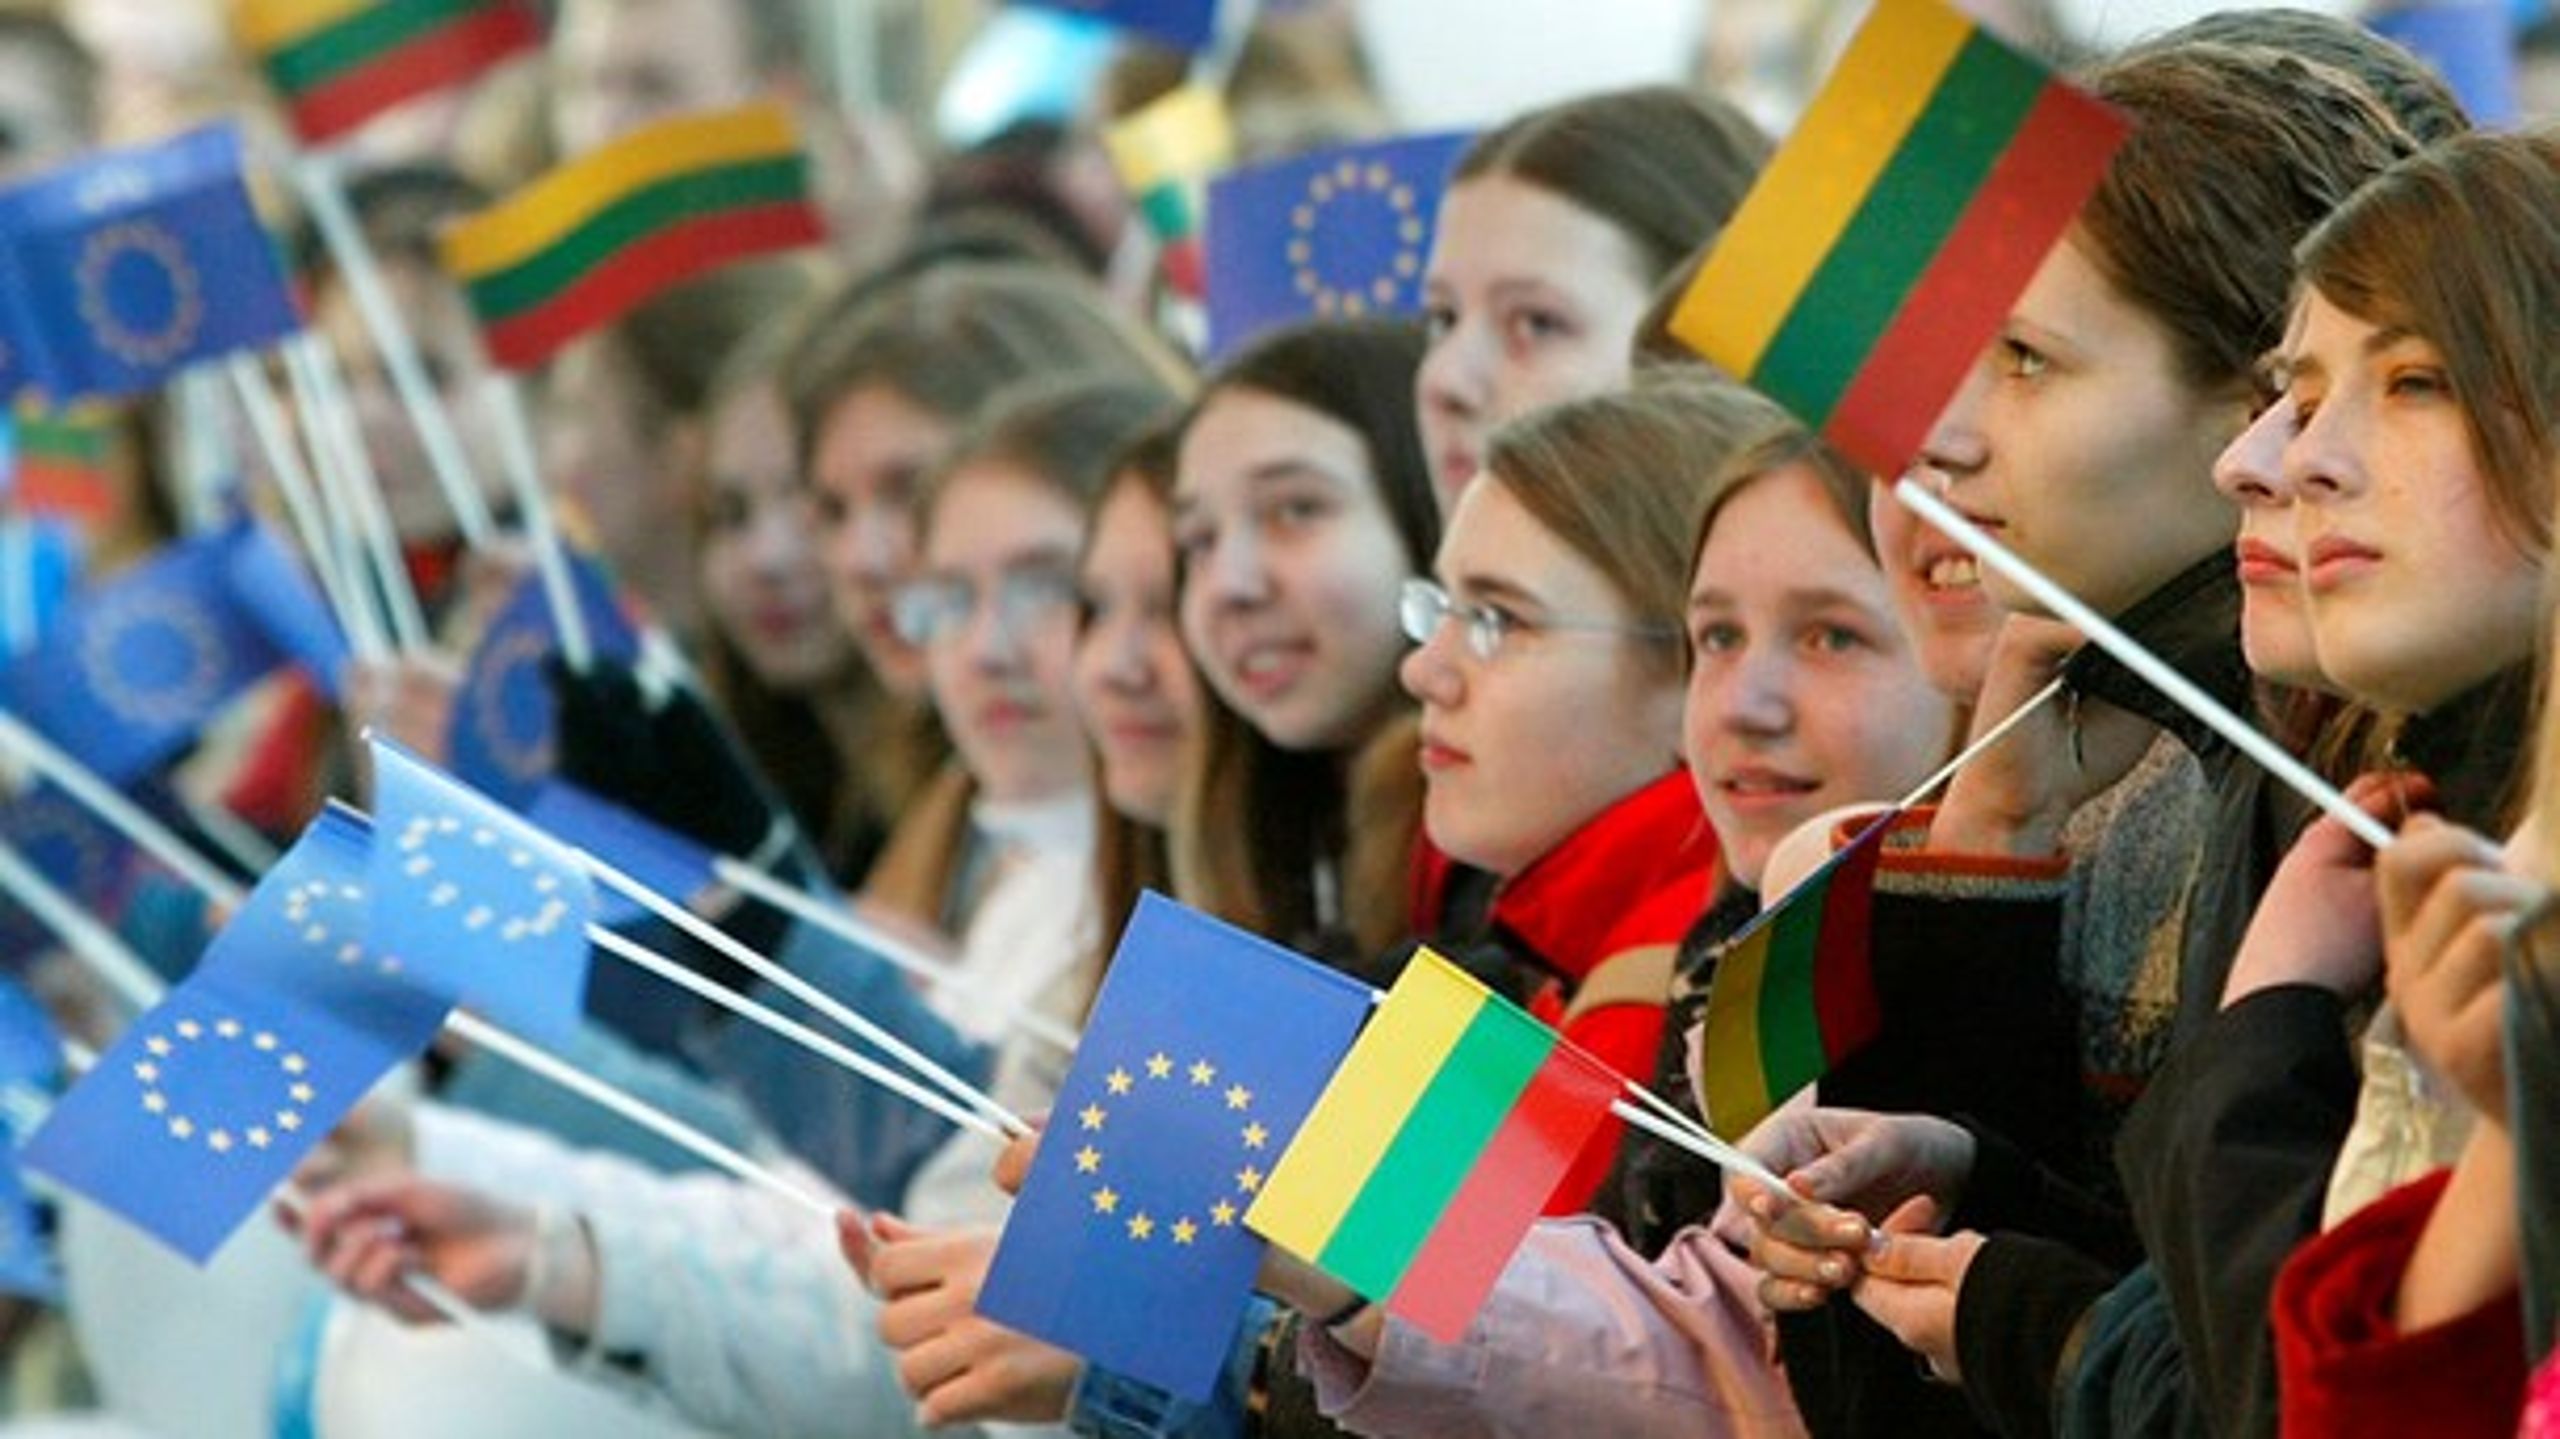 Tilskuere overværer en koncert i Litauens hovedstad Vilnius i 2004 efter indlemmelsen i EU. I Litauen og andre østeuropæiske nationer har borgerne mere tillid til EU end deres nationale parlament.